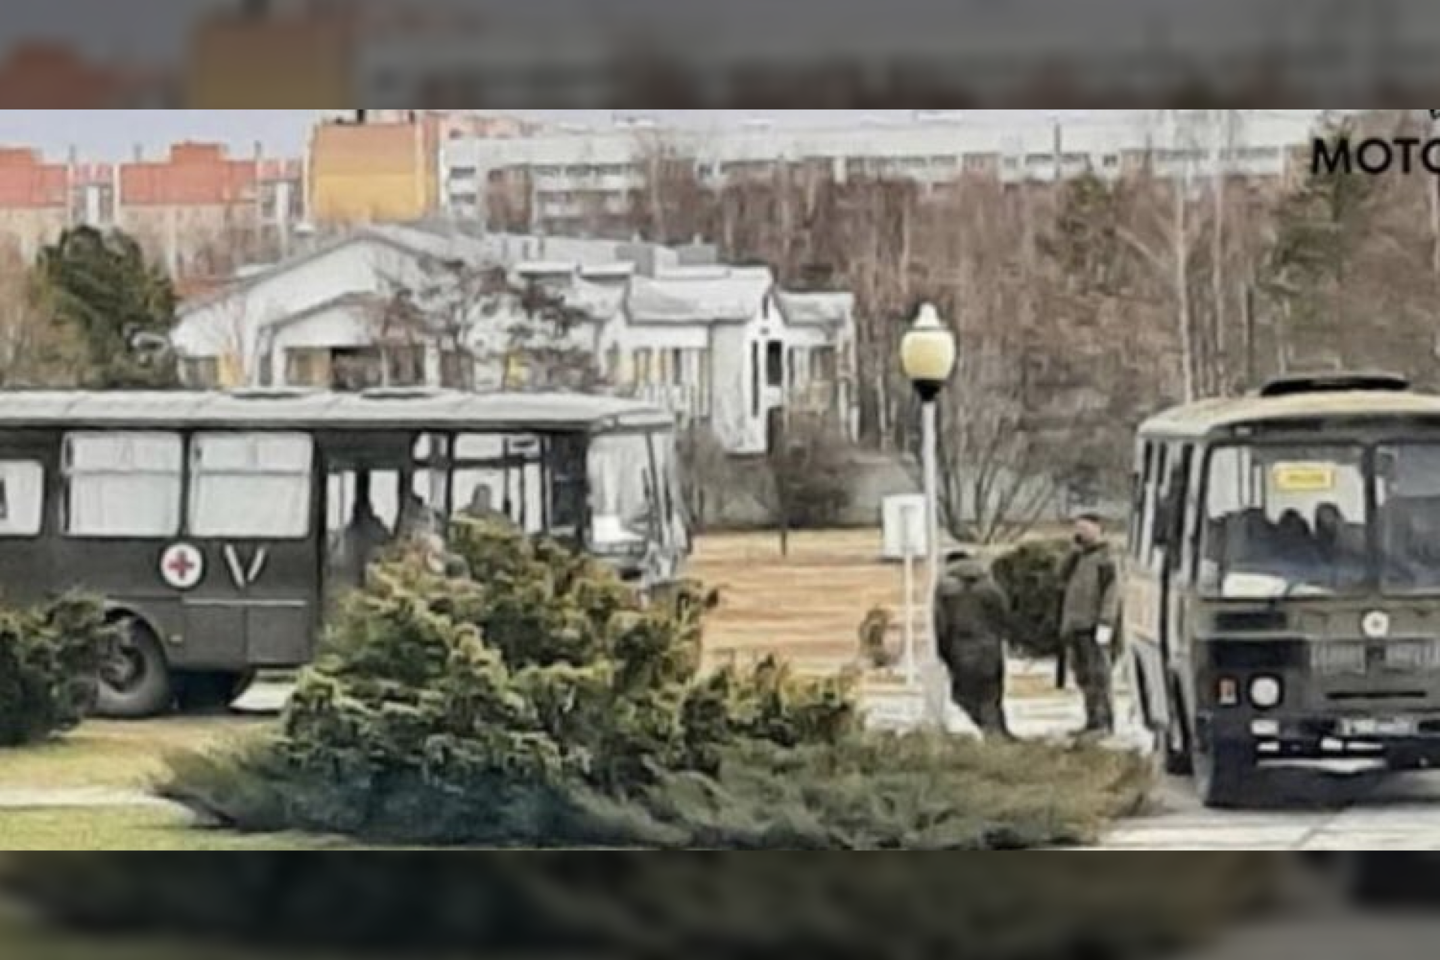  Skelbiama, kad į iš Černobylio zonos į ligoninę Baltarusijoje atvyko 7 autobusai su rusų kareiviais, kuriems pasireiškė ūmūs radiacinės ligos sindromai.